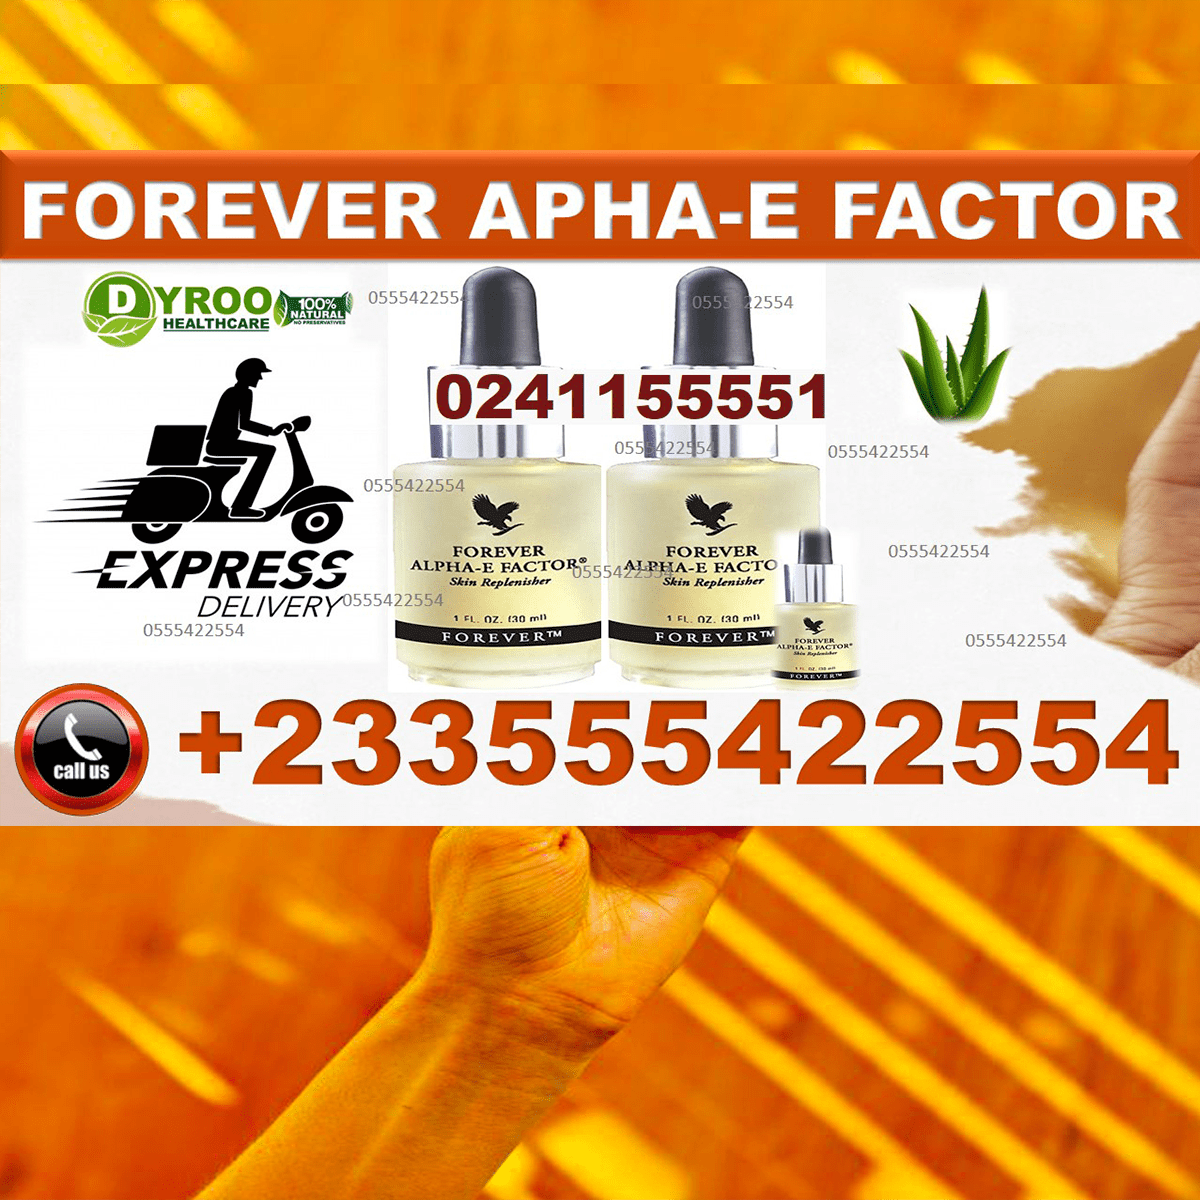 Forever Alpha-E Factor in Ghana